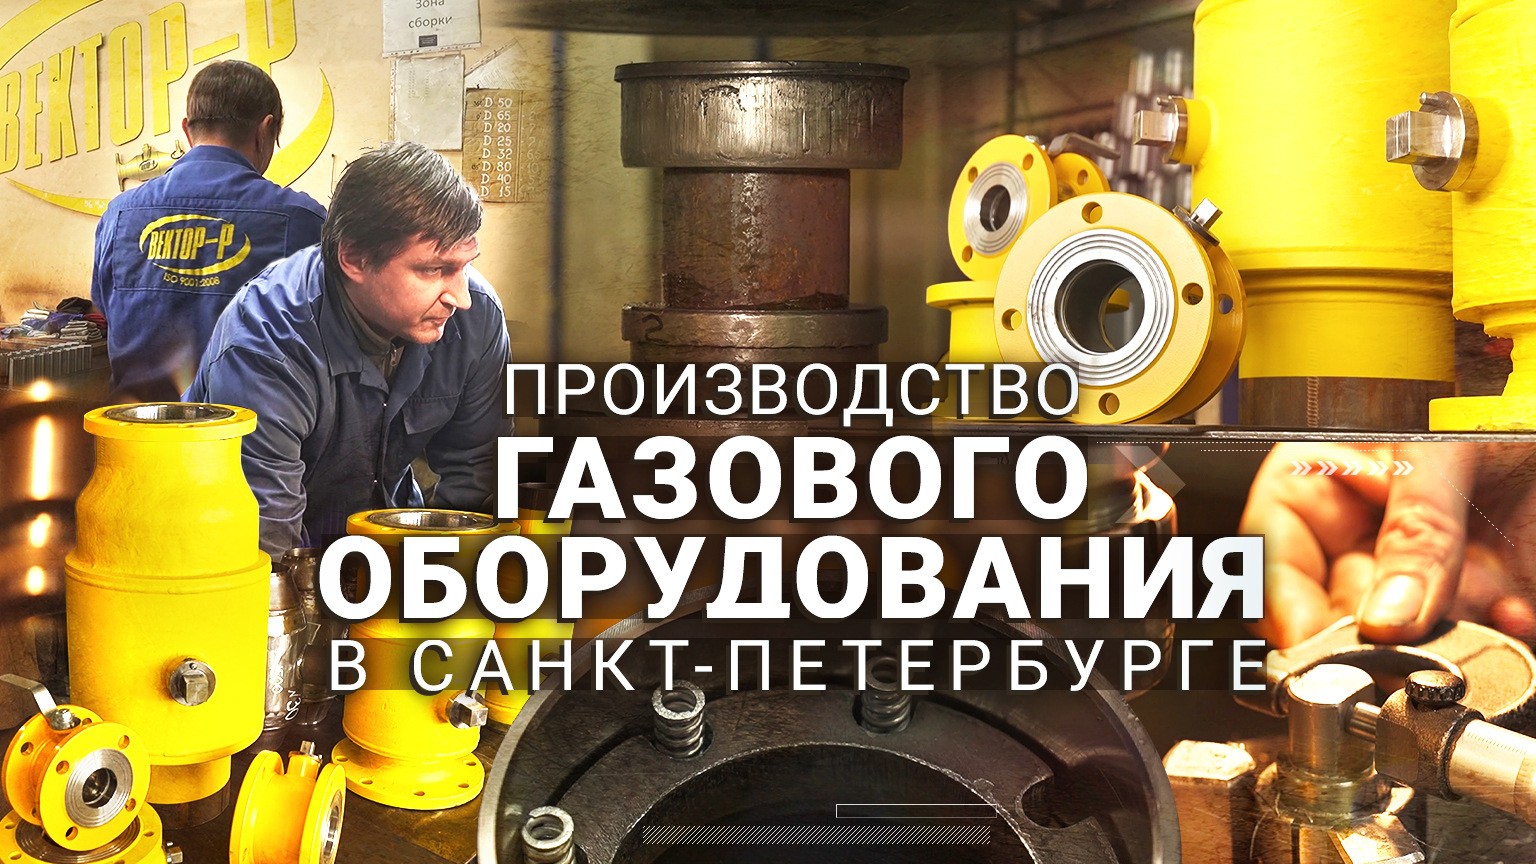 Предприятие полного цикла ООО «Вектор-Р» в Санкт-Петербурге — производитель газового оборудования